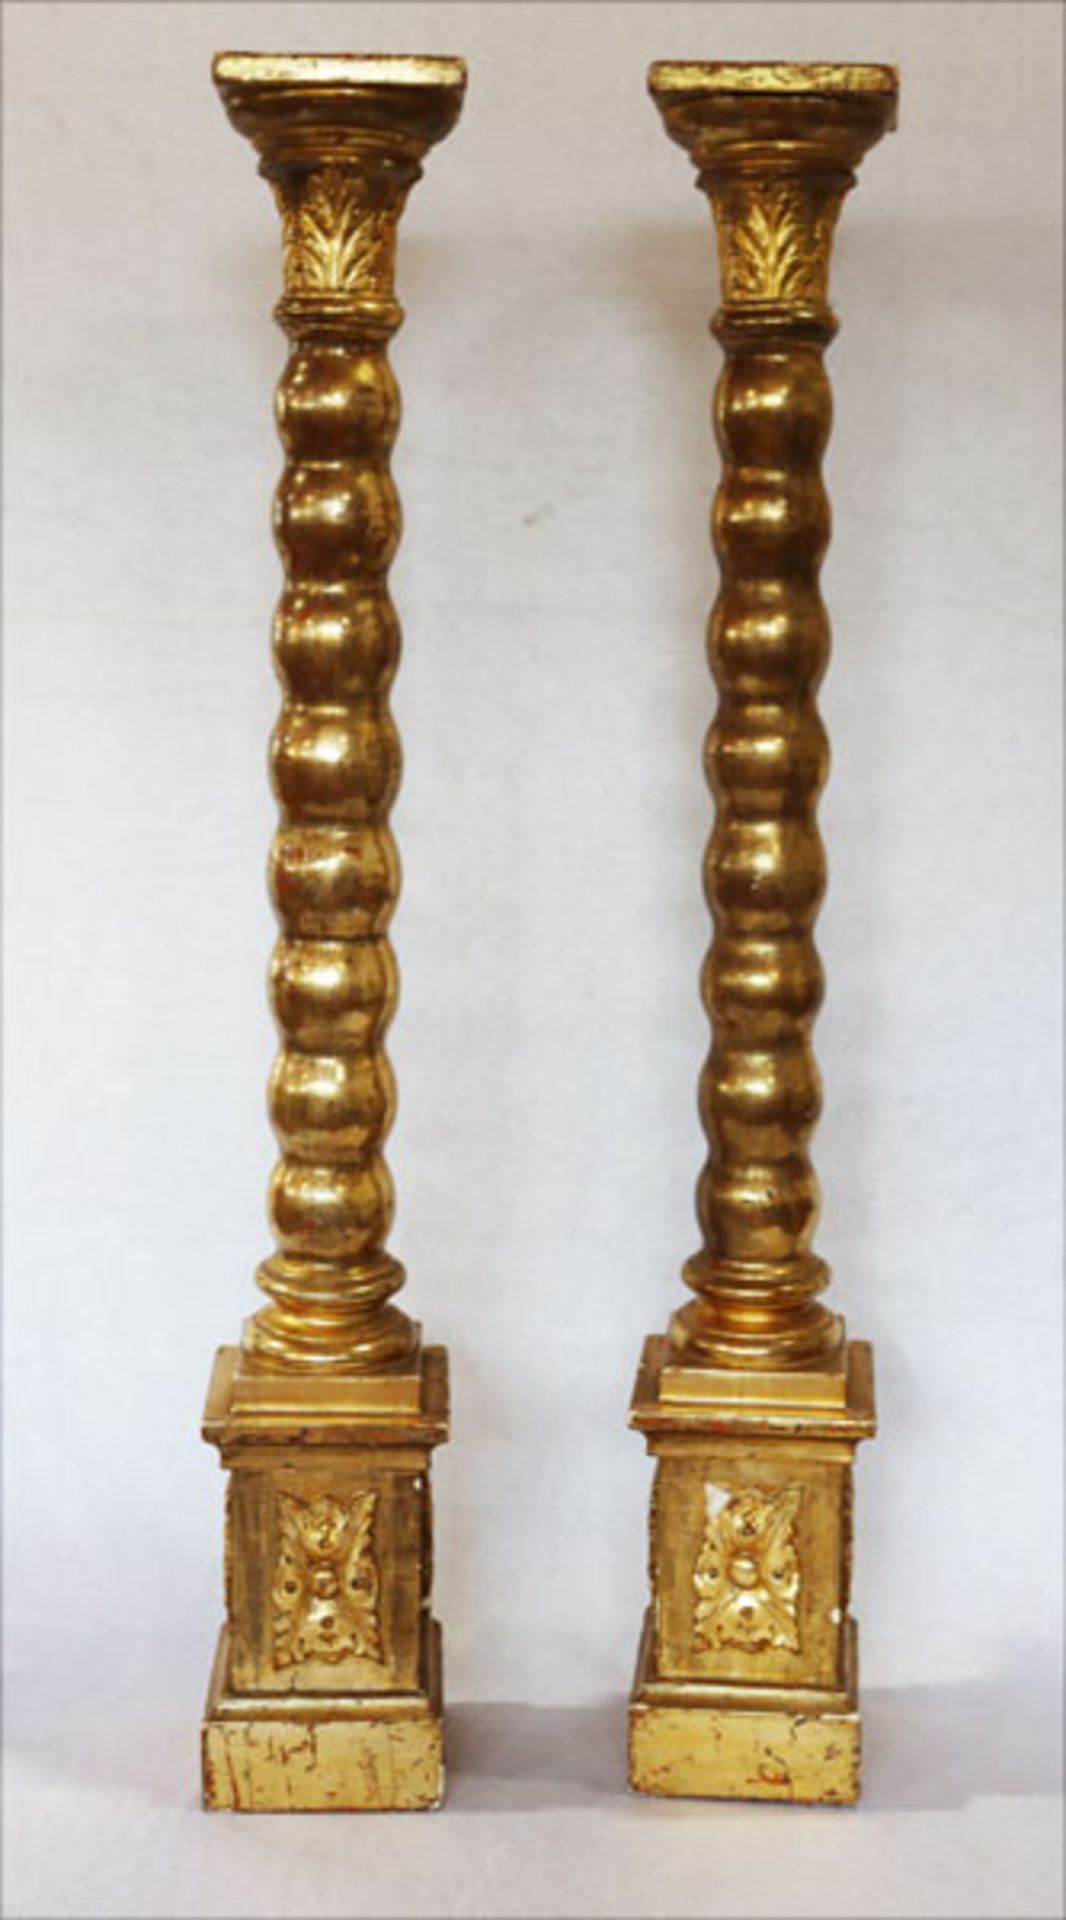 Paar gedrechselte Holzsäulen auf eckigem Stand, teils beschnitzt, gold gefaßt, 19. Jahrhundert, H